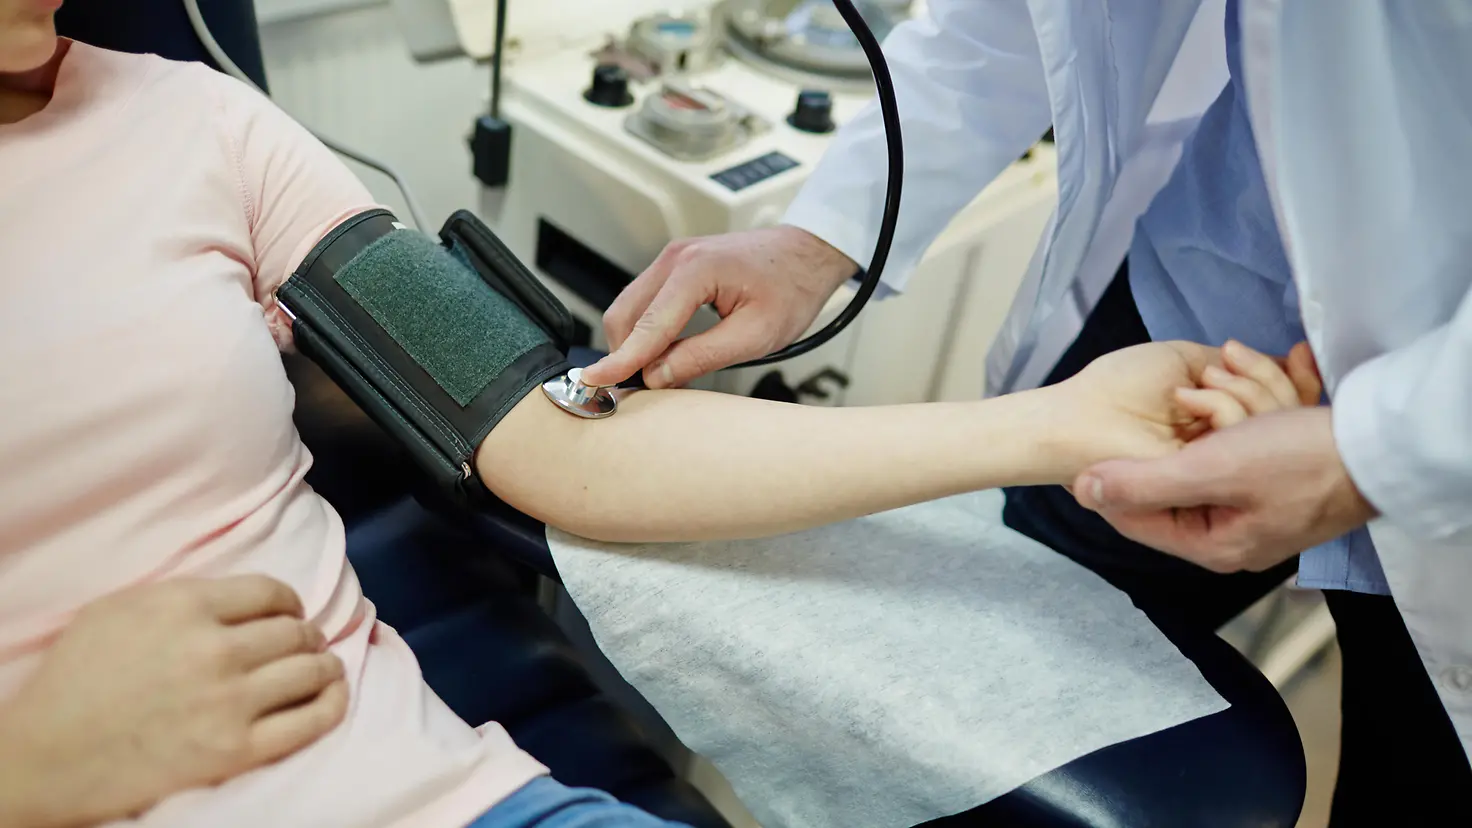 Zu sehen ist ein Arzt, der bei einer Patientin Blutdruck misst 